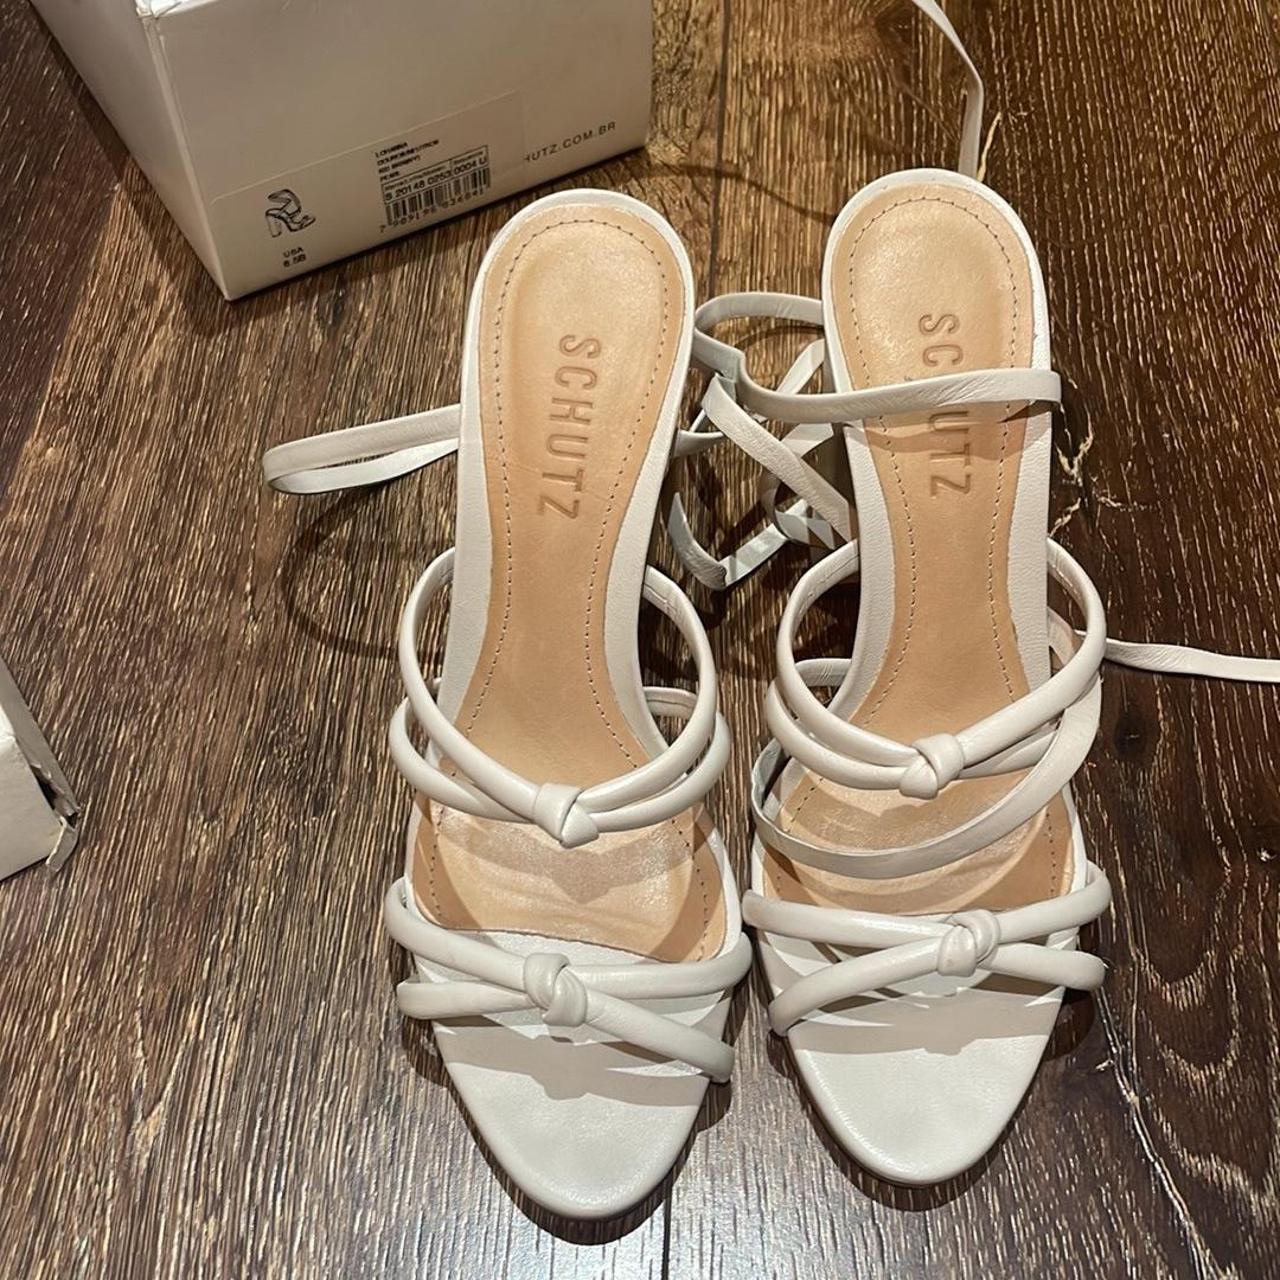 Schutz Women's White and Cream Sandals